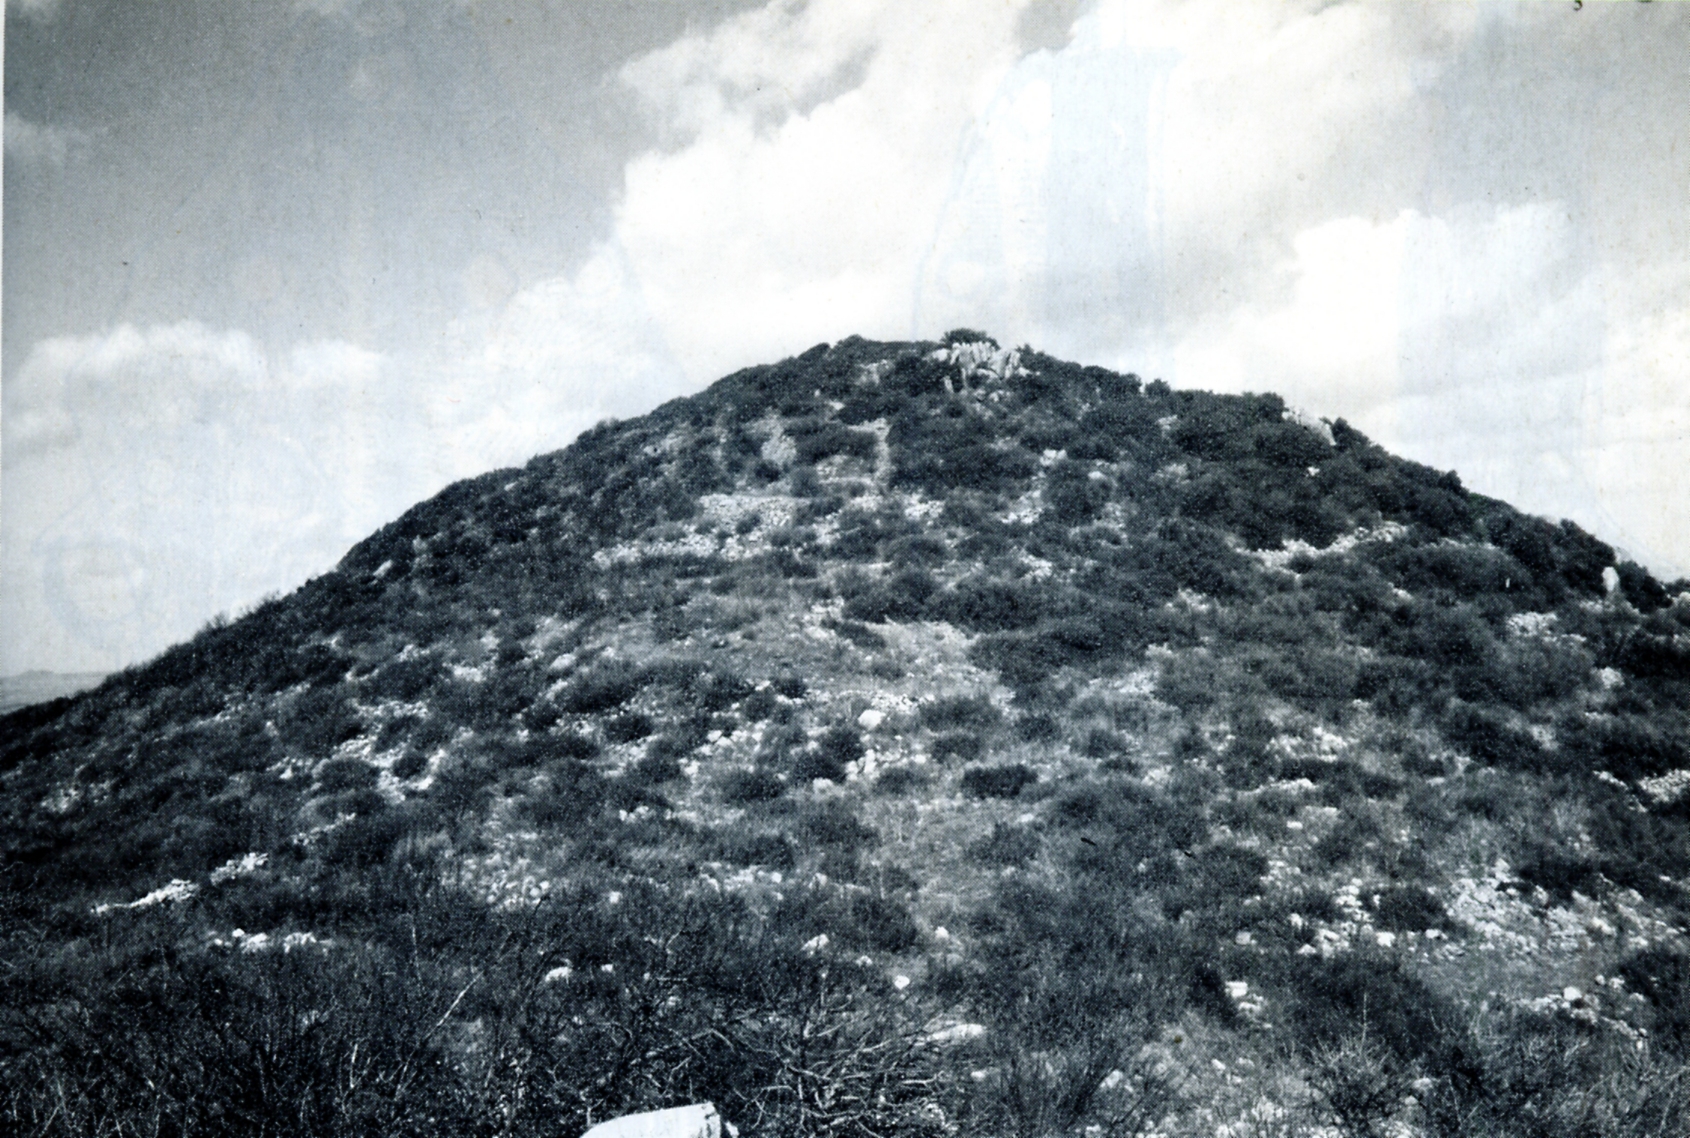 Monte sa idda (insediamento, villaggio nuragico)